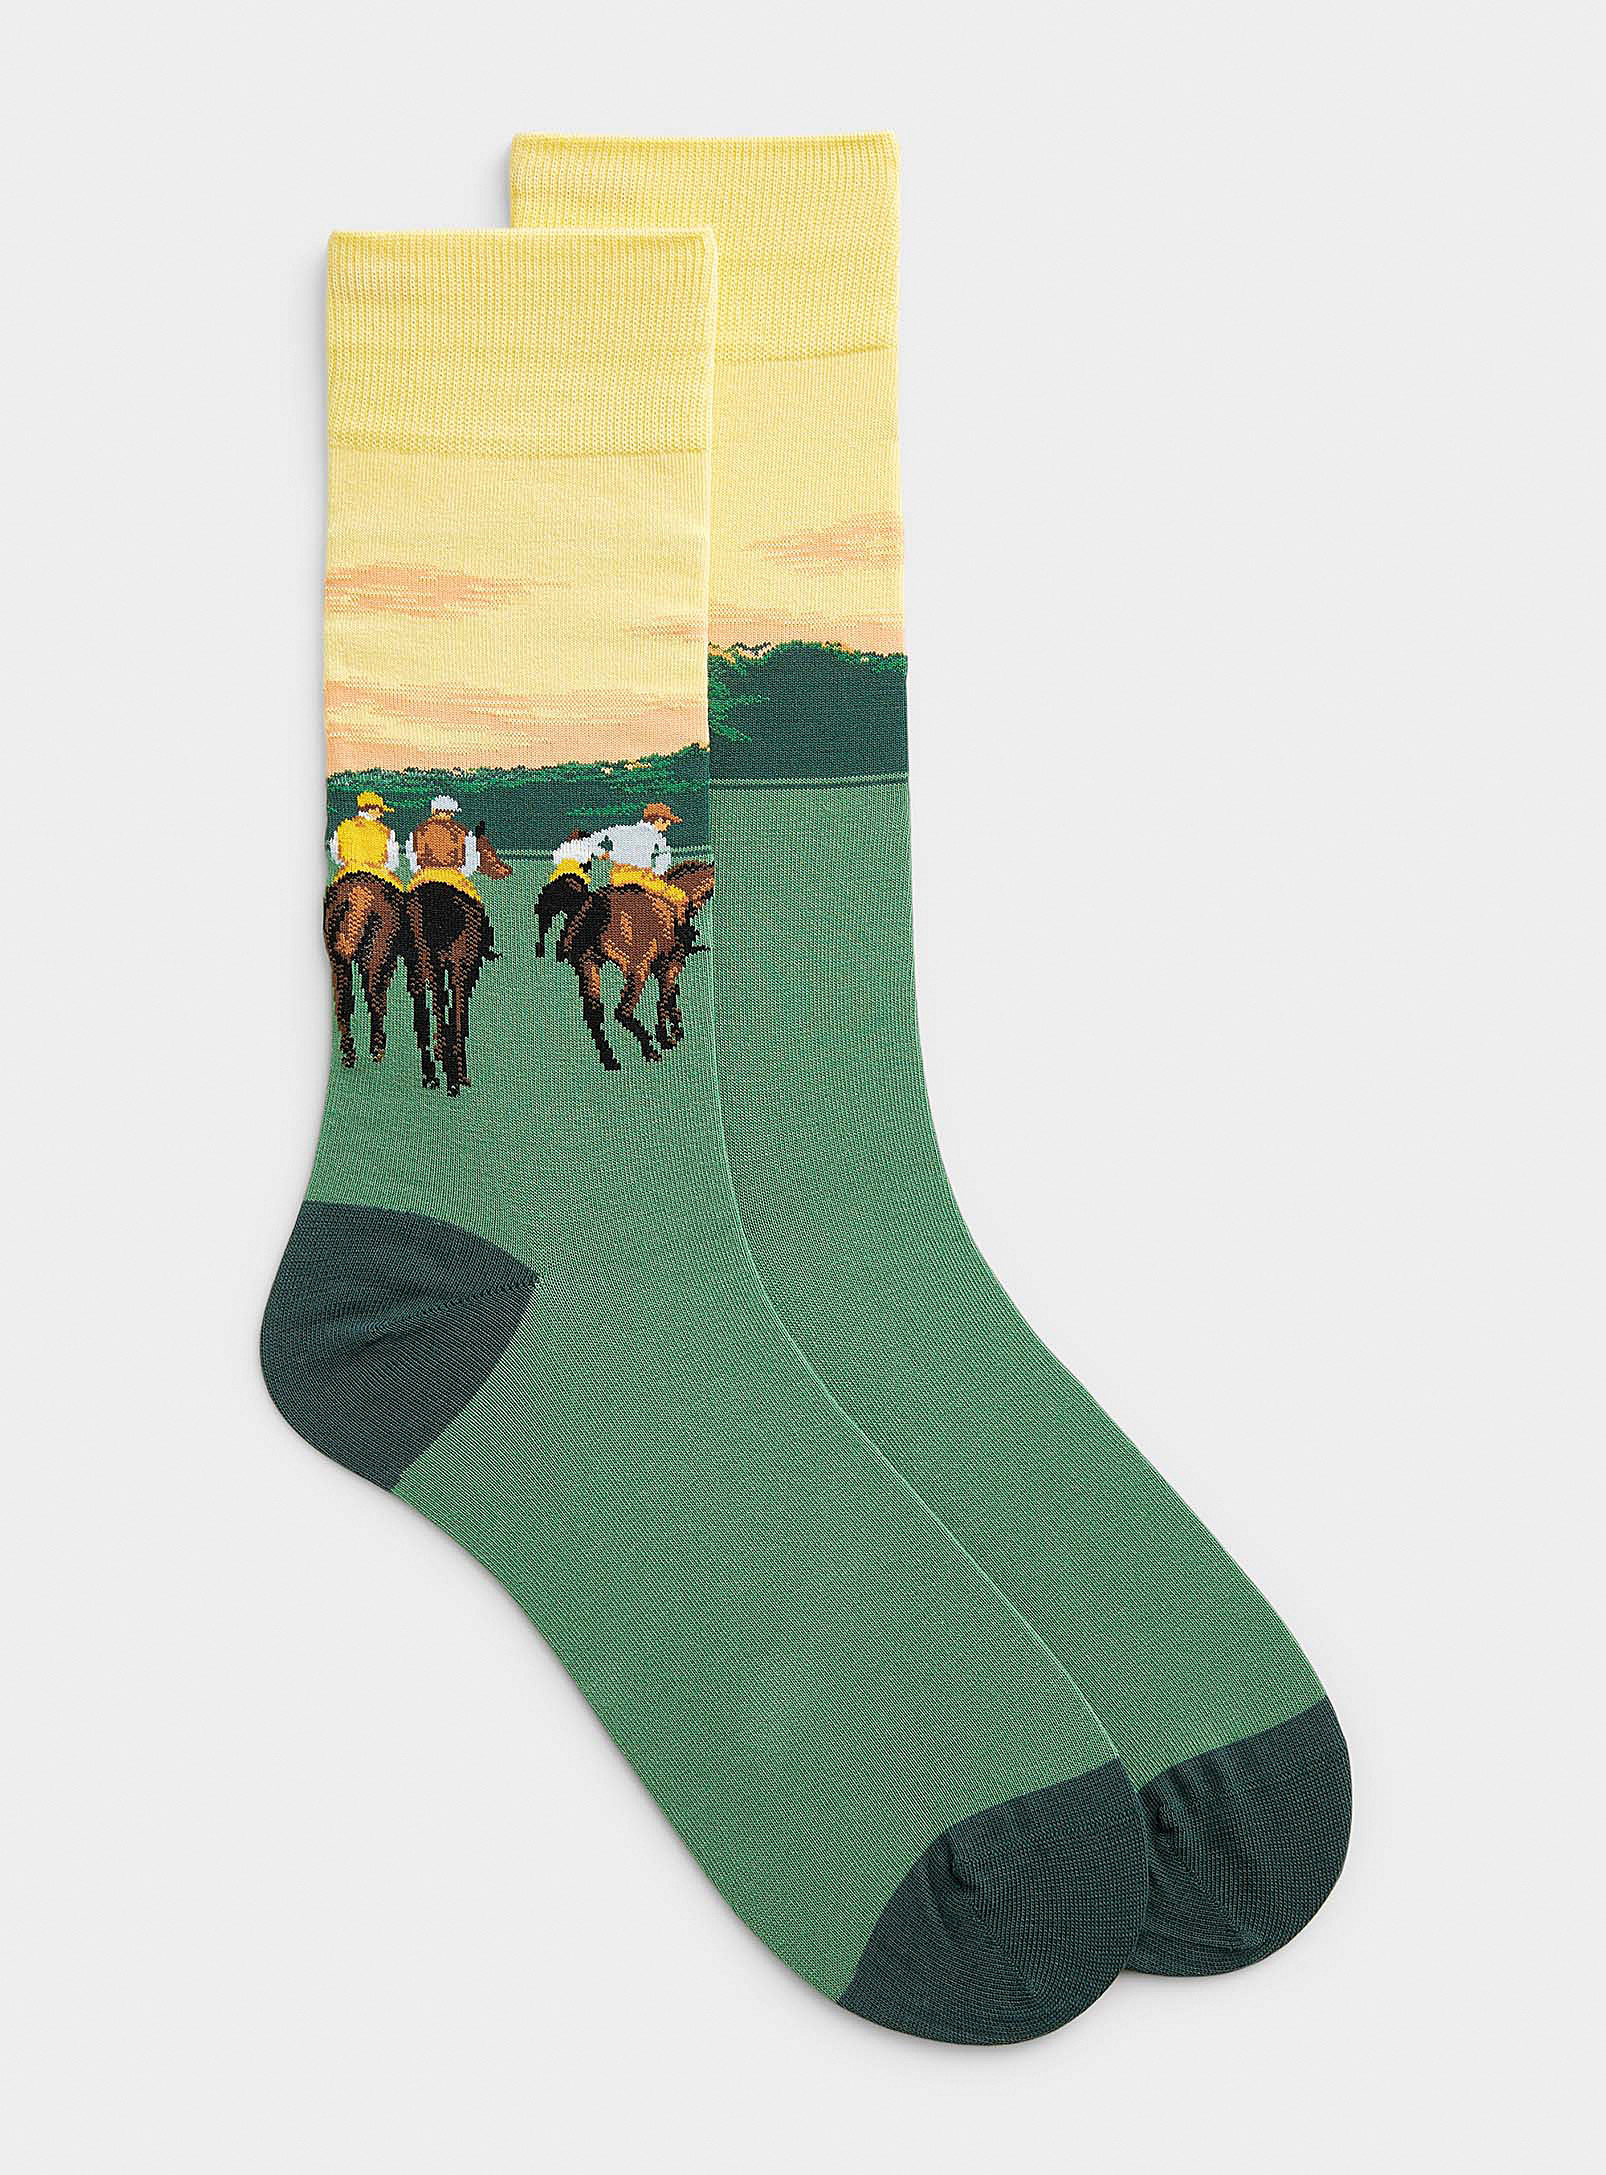 Hot Sox - Men's Racehorse sock